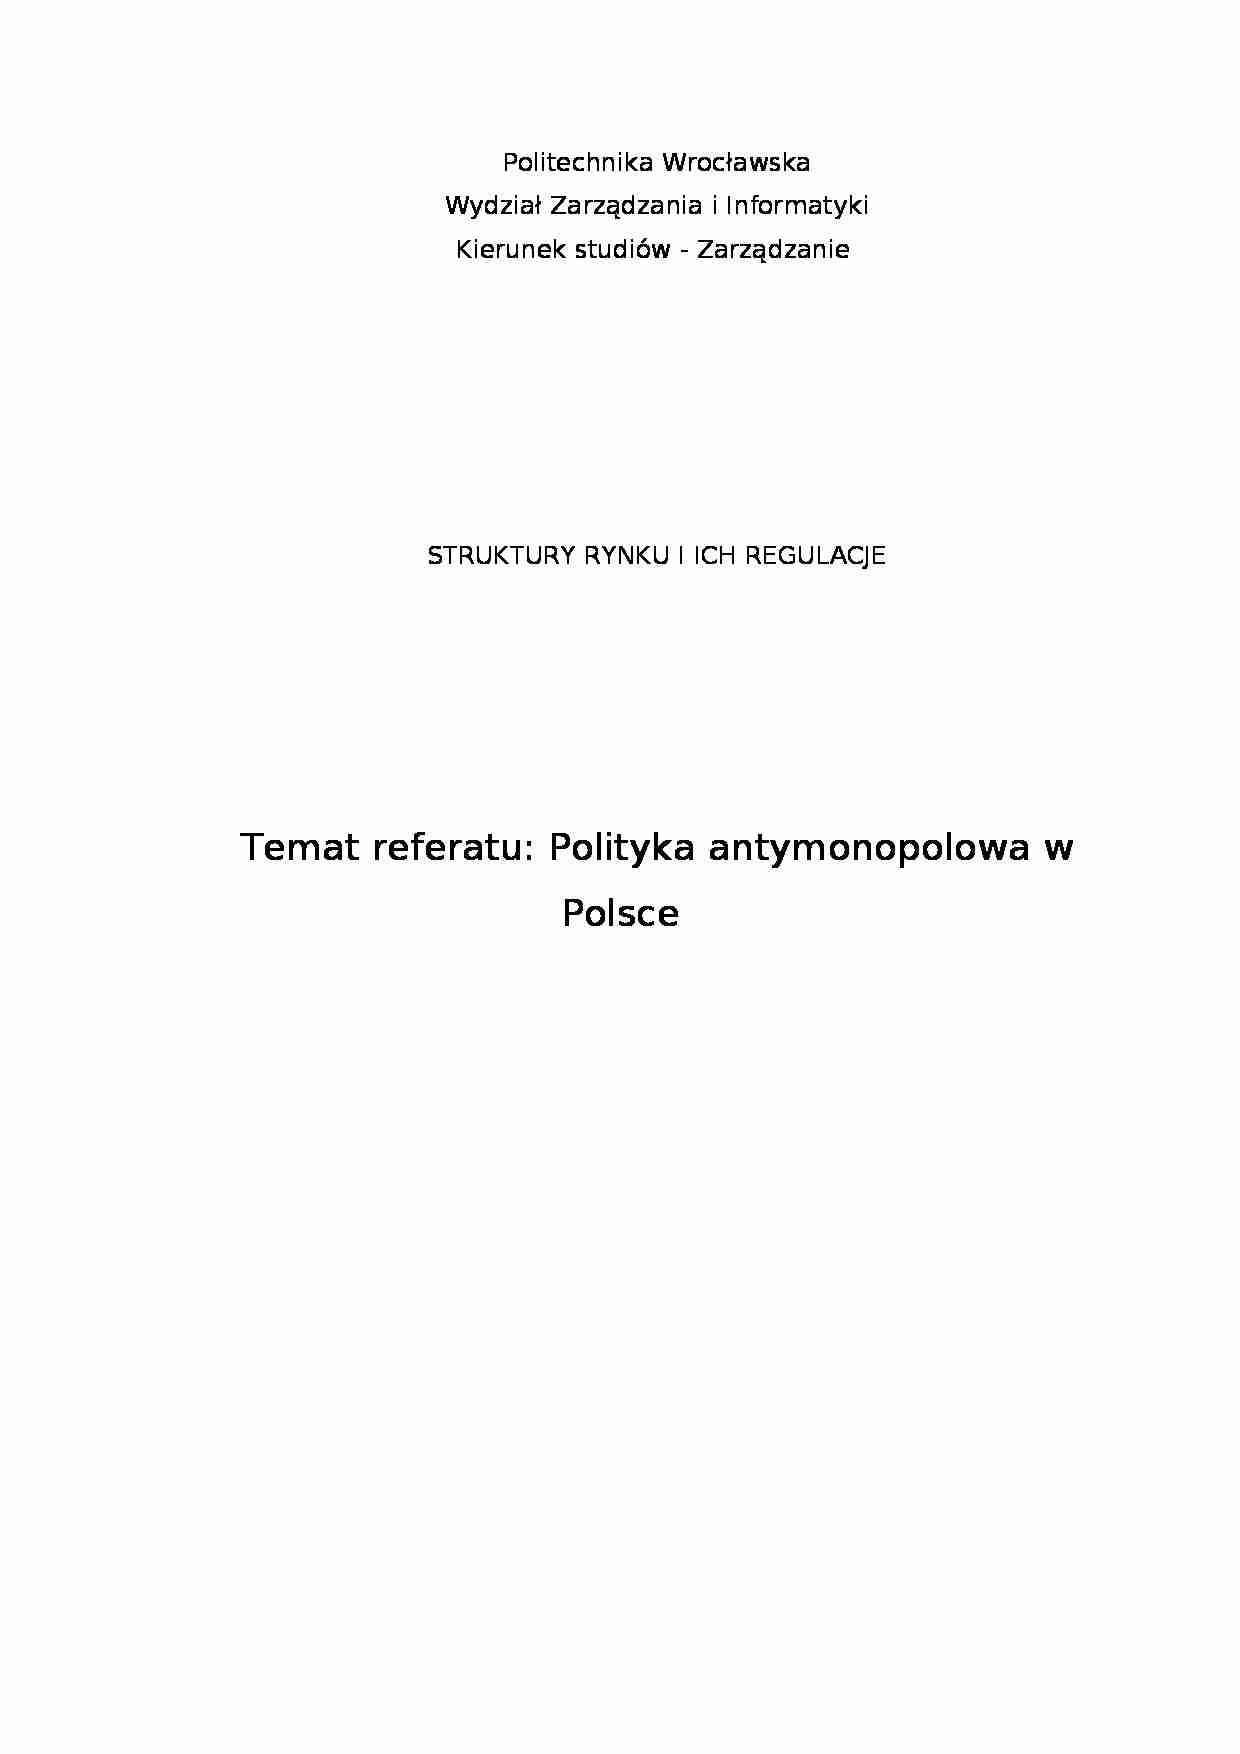 Polityka antymonopolowa w Polsce - omówienie - strona 1